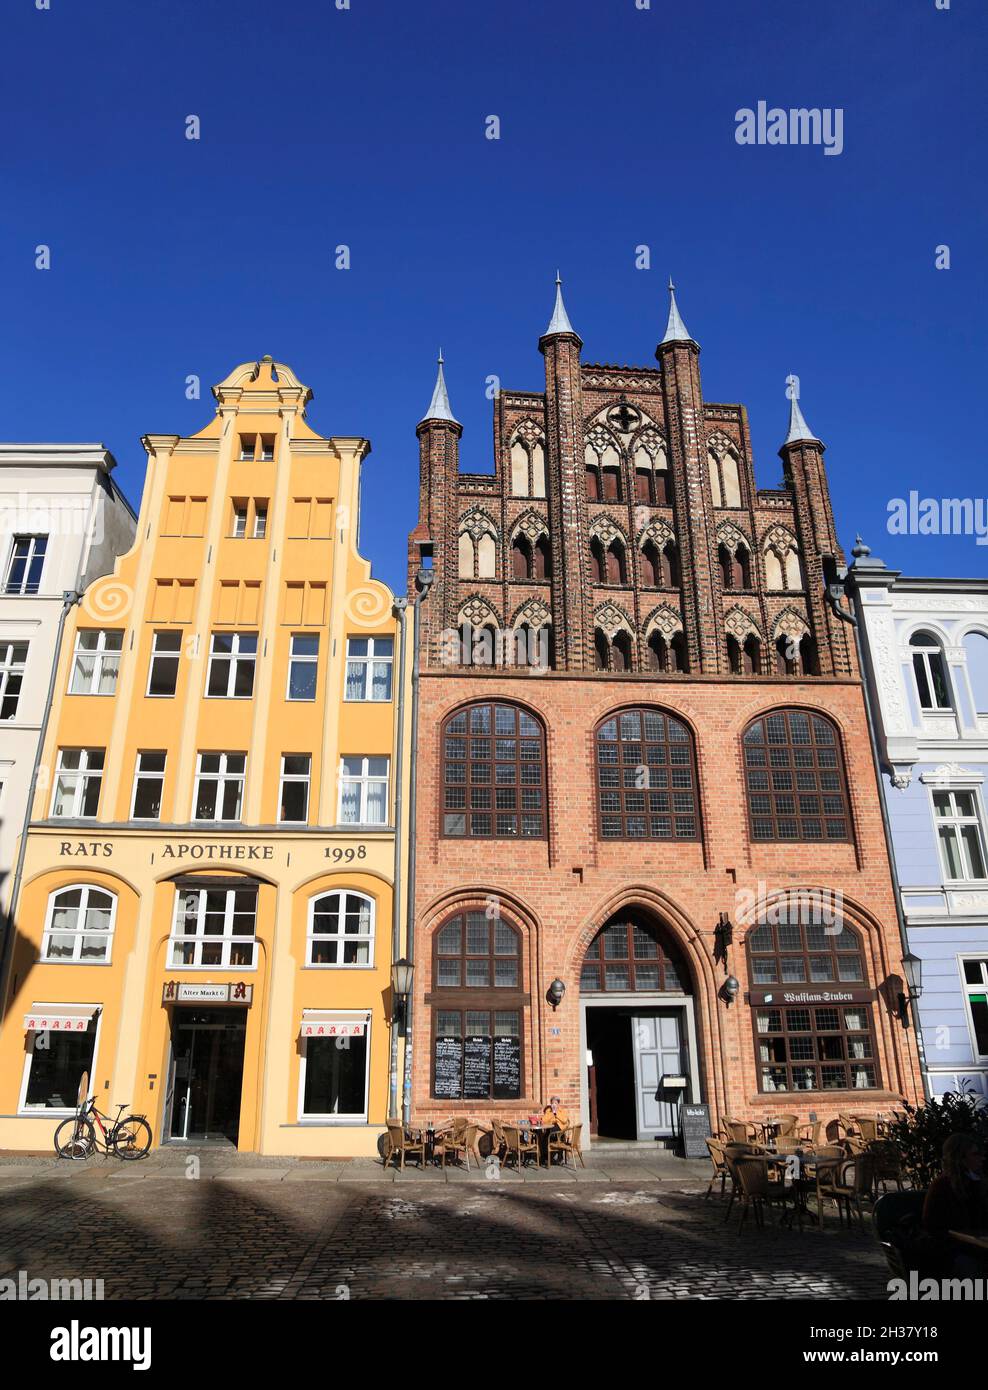 Wulflam-House (à droite) à l'ancien marché et Ratsapotheke, ville hanséatique Stralsund, Mecklembourg-Poméranie occidentale, Allemagne, Europe Banque D'Images